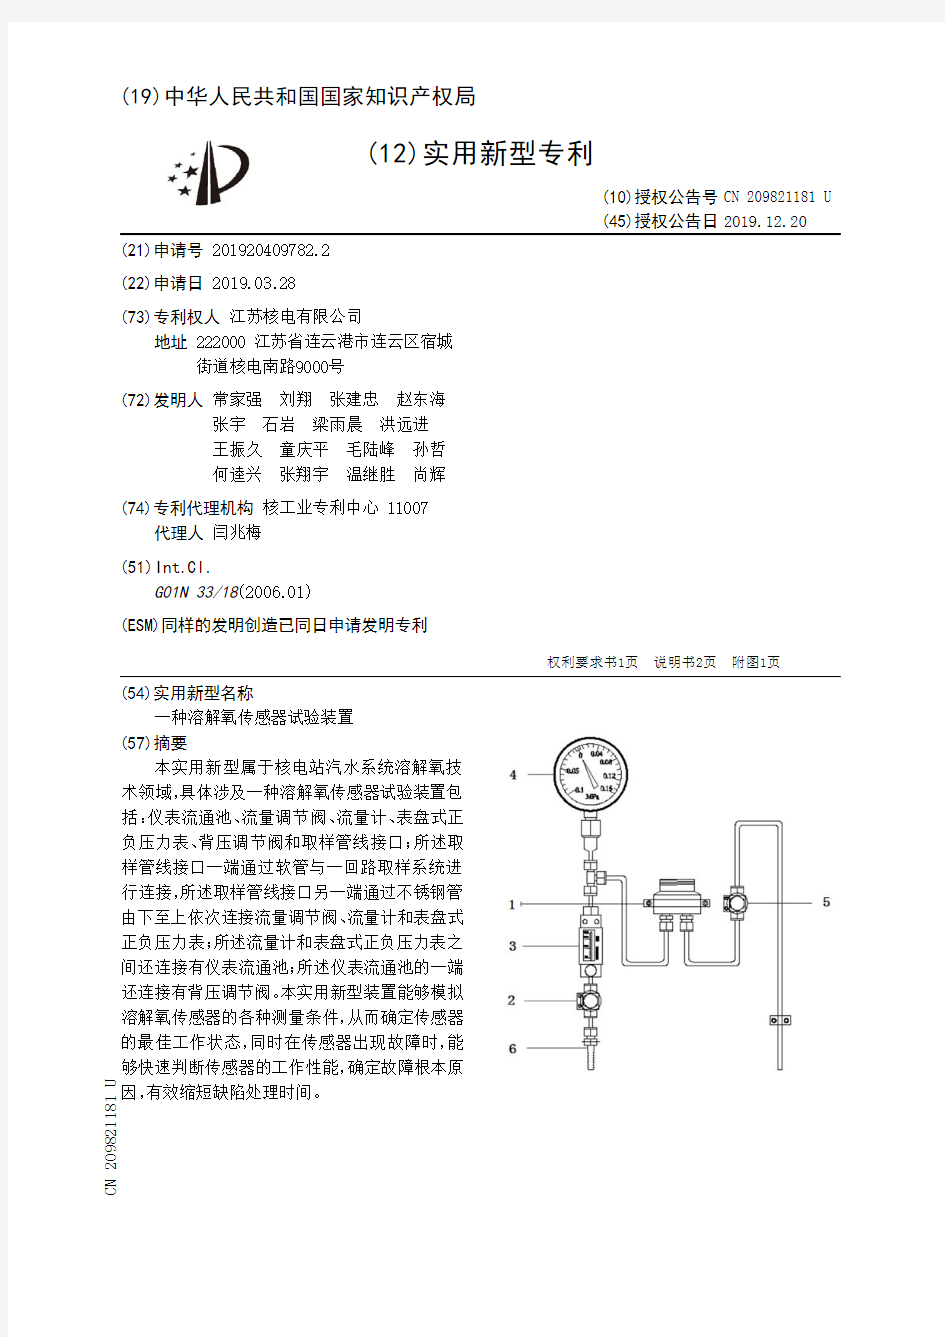 【CN209821181U】一种溶解氧传感器试验装置【专利】